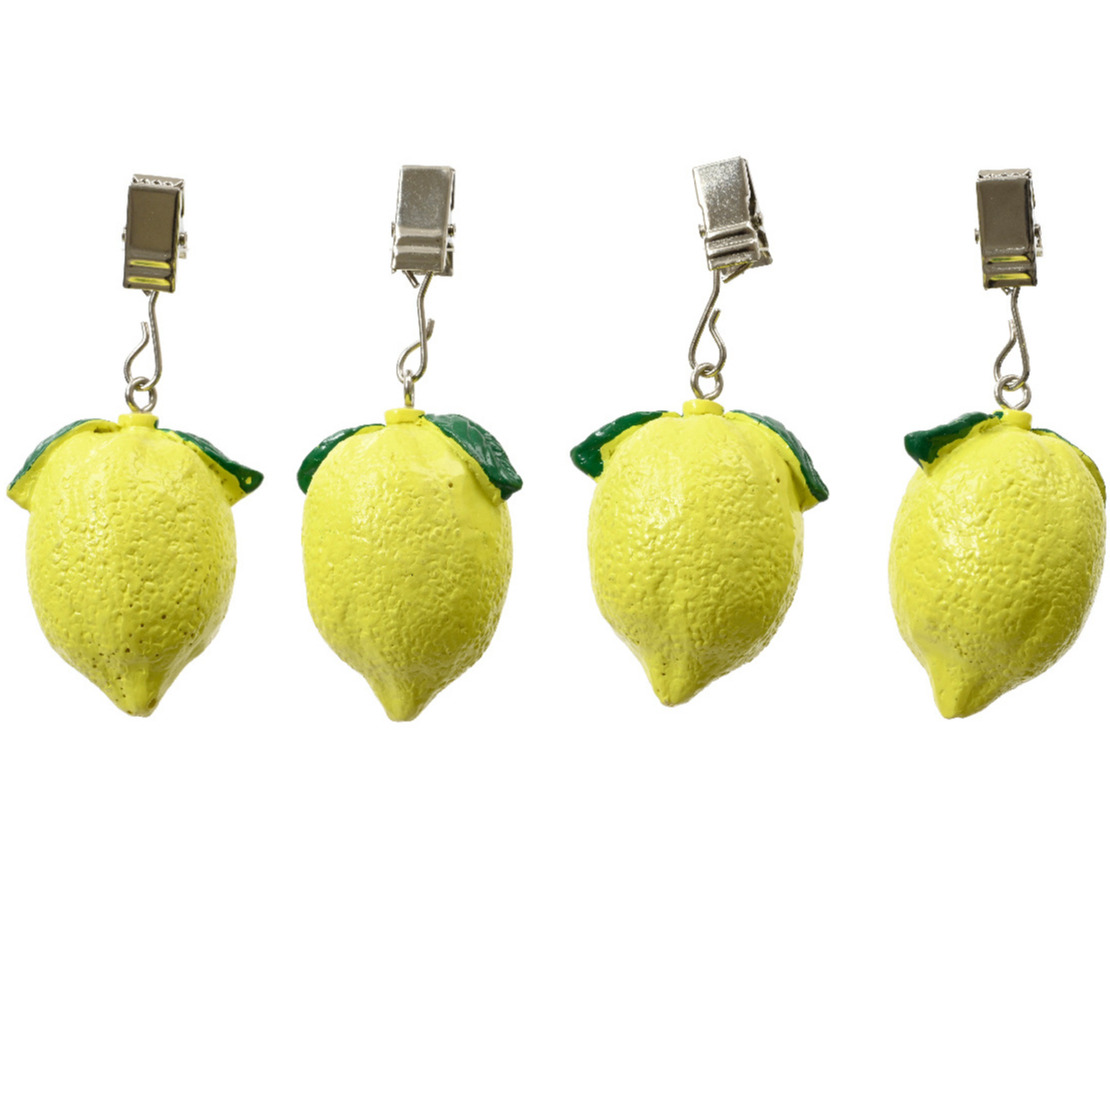 Decoris tafelkleedgewichten - 4x - citroen - ijzer - geel -